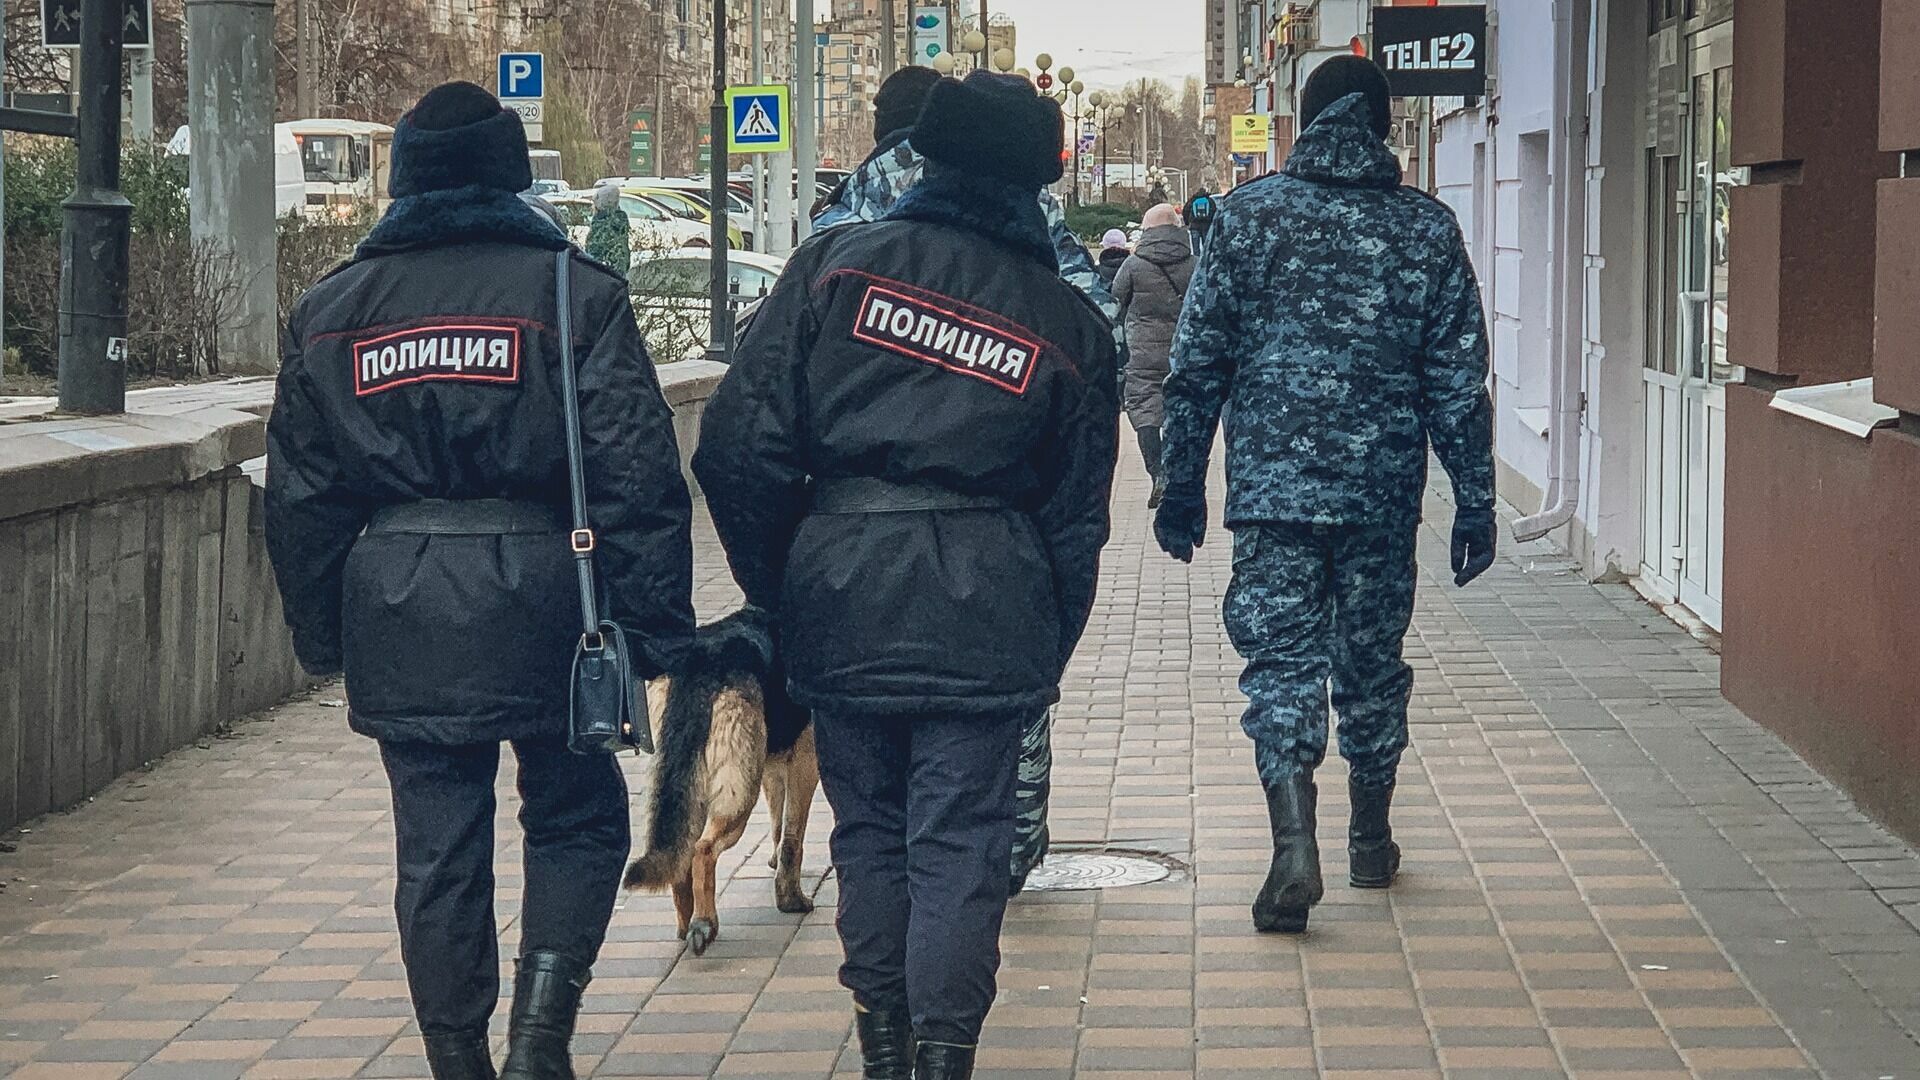 Залечь на дно в Уссурийске: приморская полиция раскрыла иностранного преступника